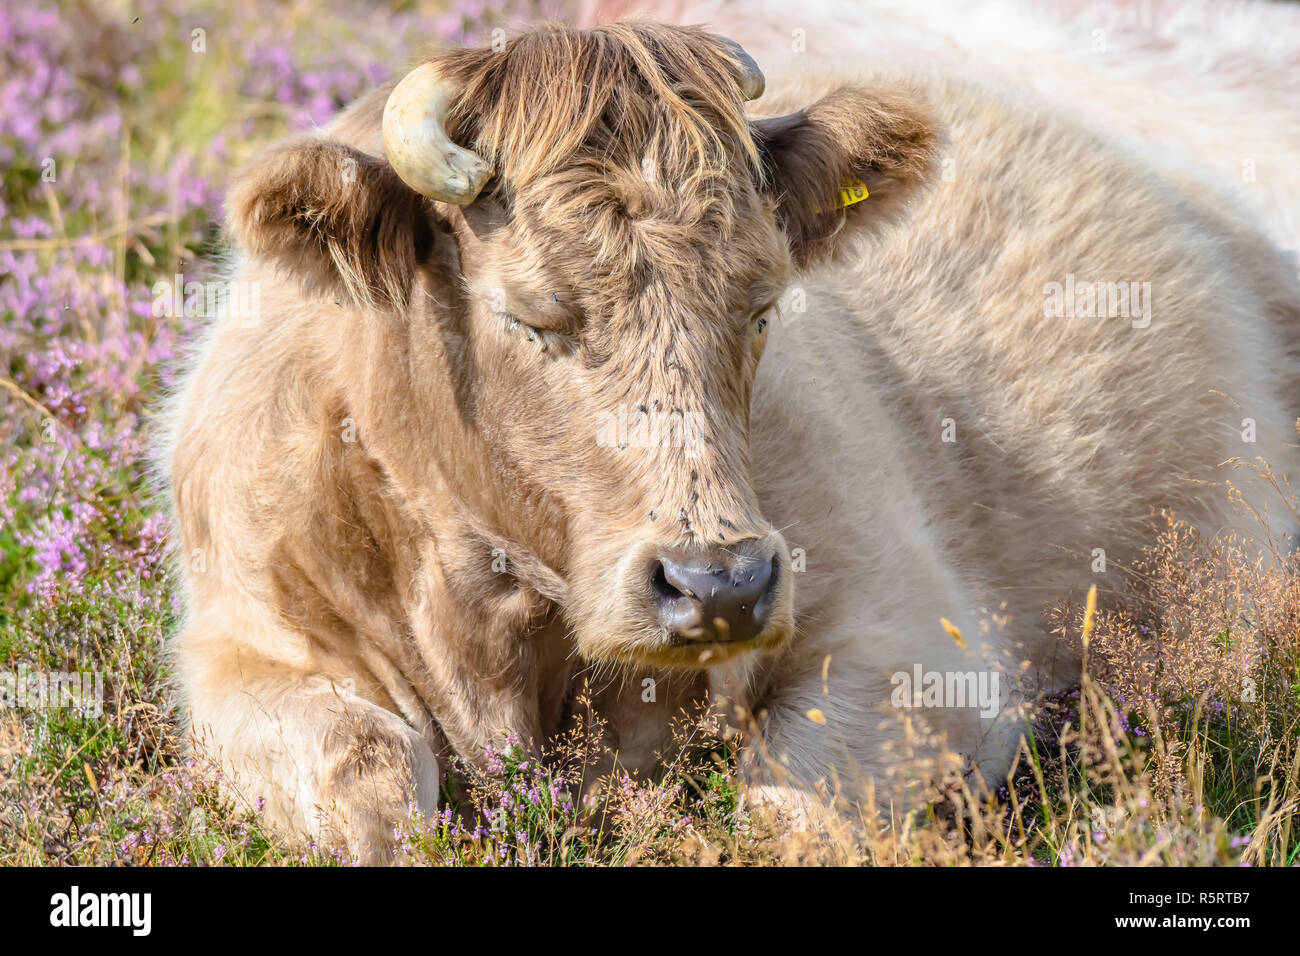 Brown cow durmiendo en campo cubierto con violeta vibrante heather flowers.Organic agricultura rural en uk.Siesta.Dulces sueños.close up retrato. Foto de stock